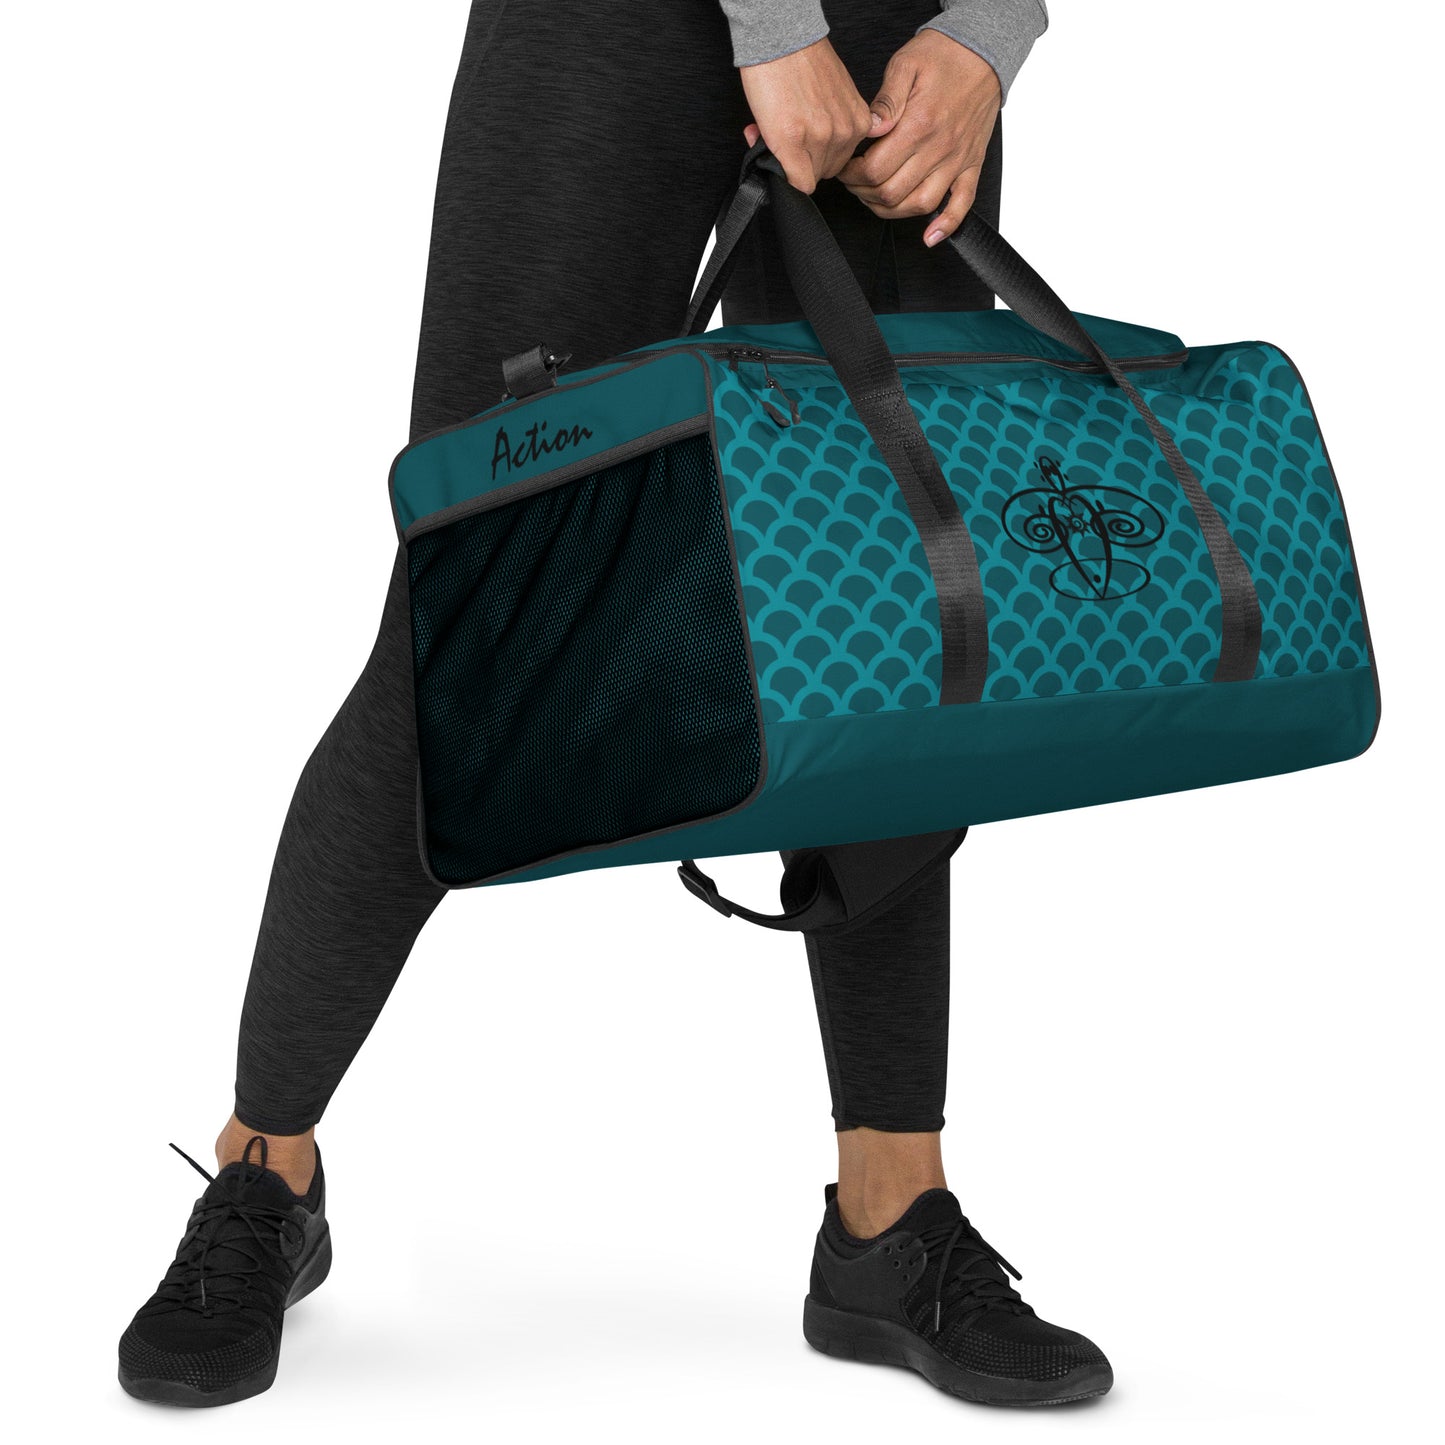 Travel bag / Duffle bag / Gym bag.